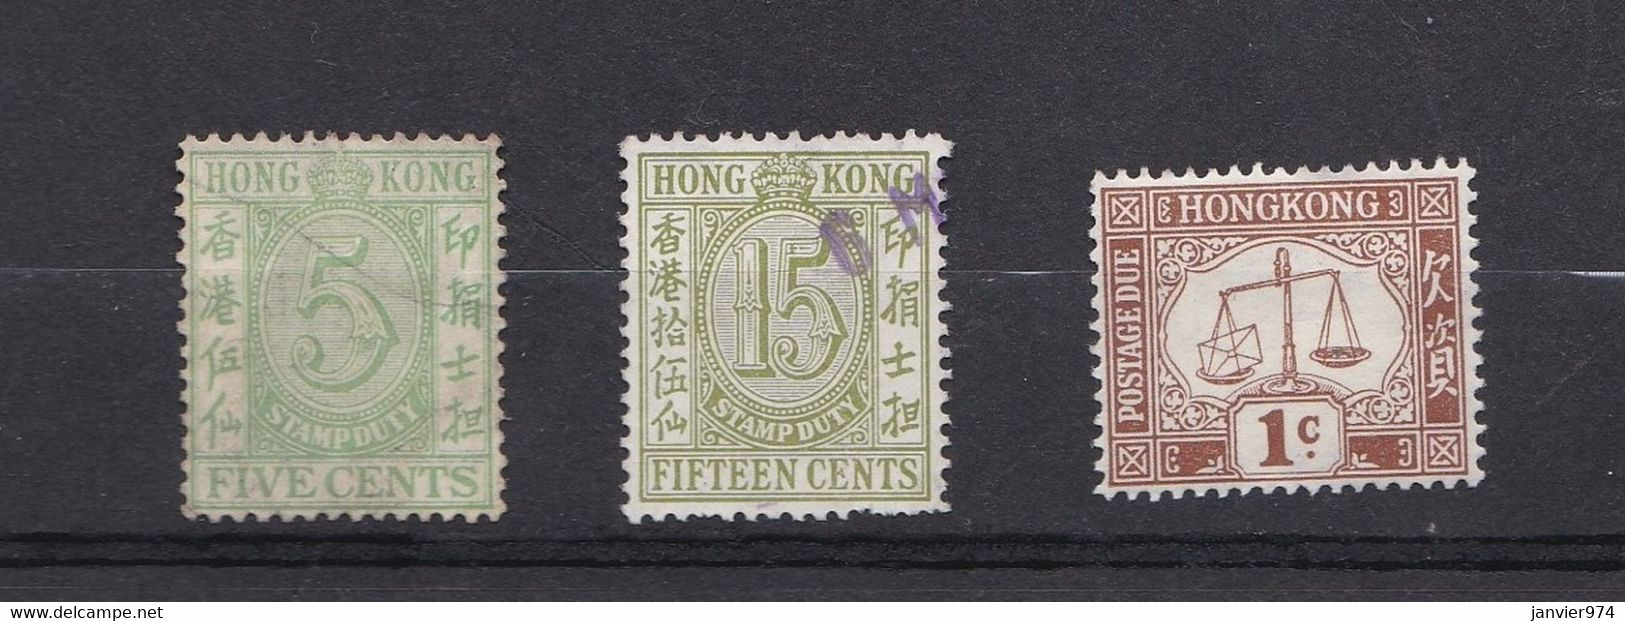 Hong Kong 2 Timbres 5 Cent Et 15 Cents 1938 + Un Timbre Taxe 1924, Voir Scan - Timbres Fiscaux-postaux